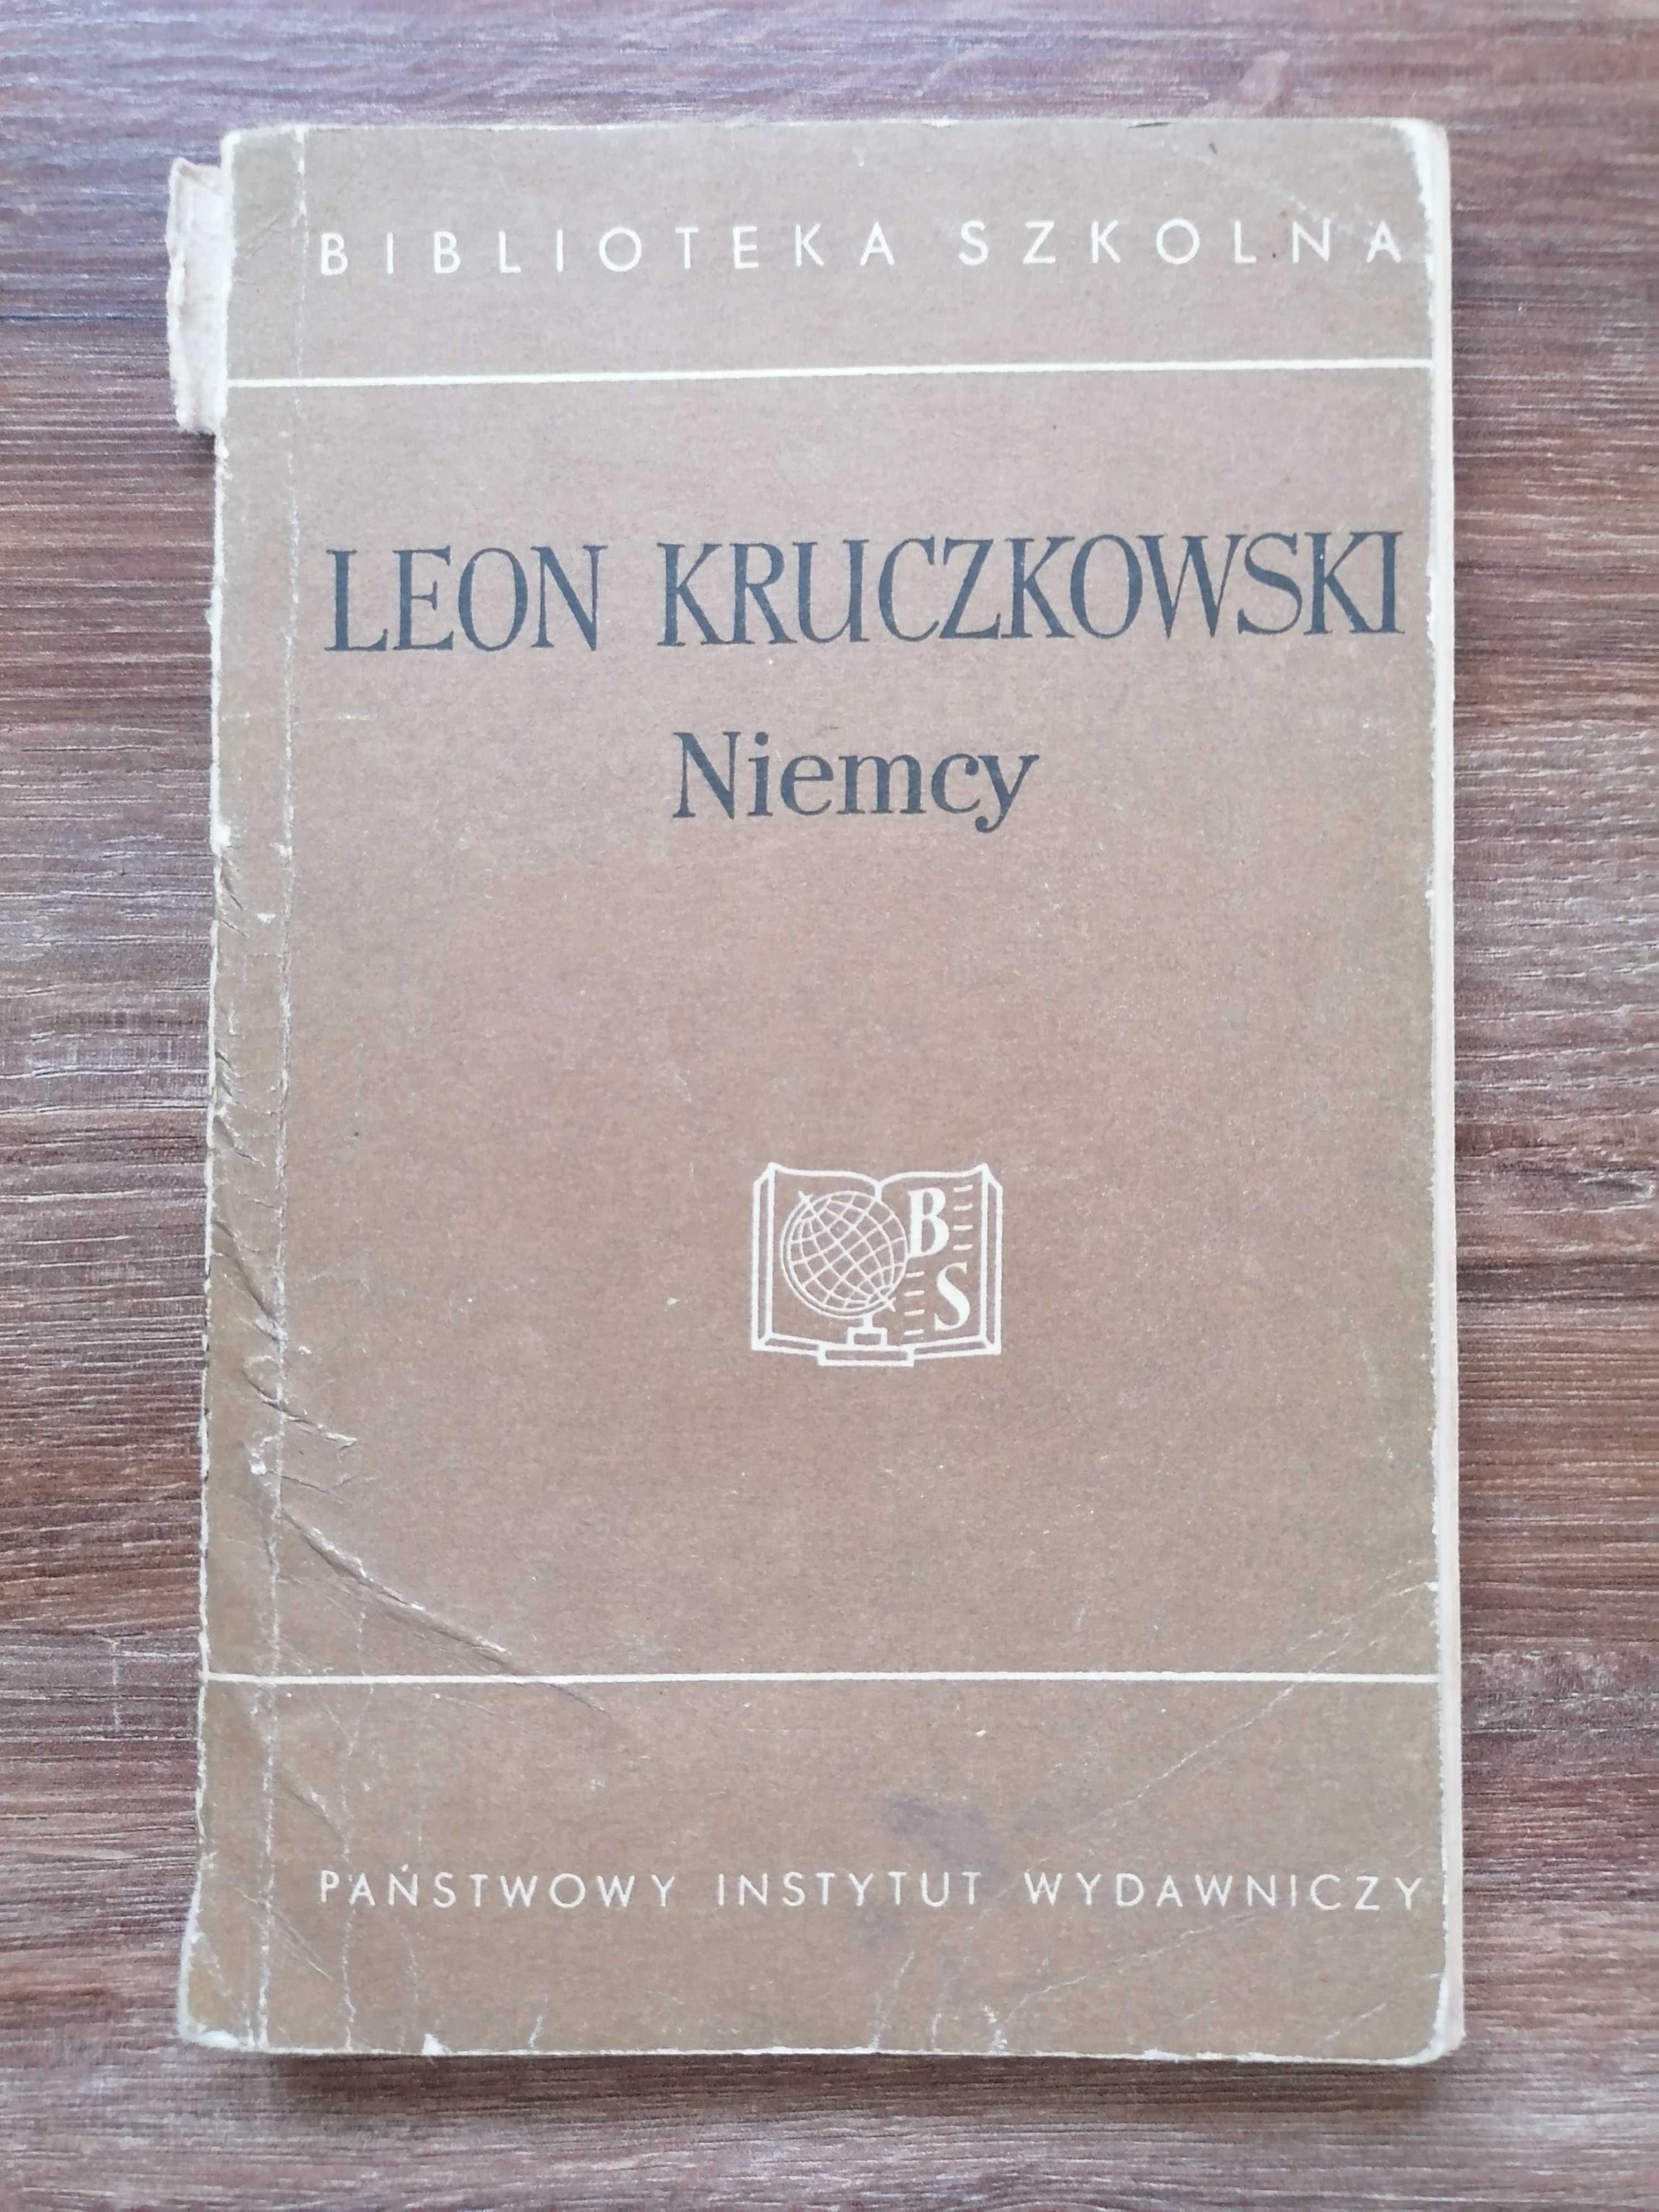 Leon Kruczkowski - "Niemcy"